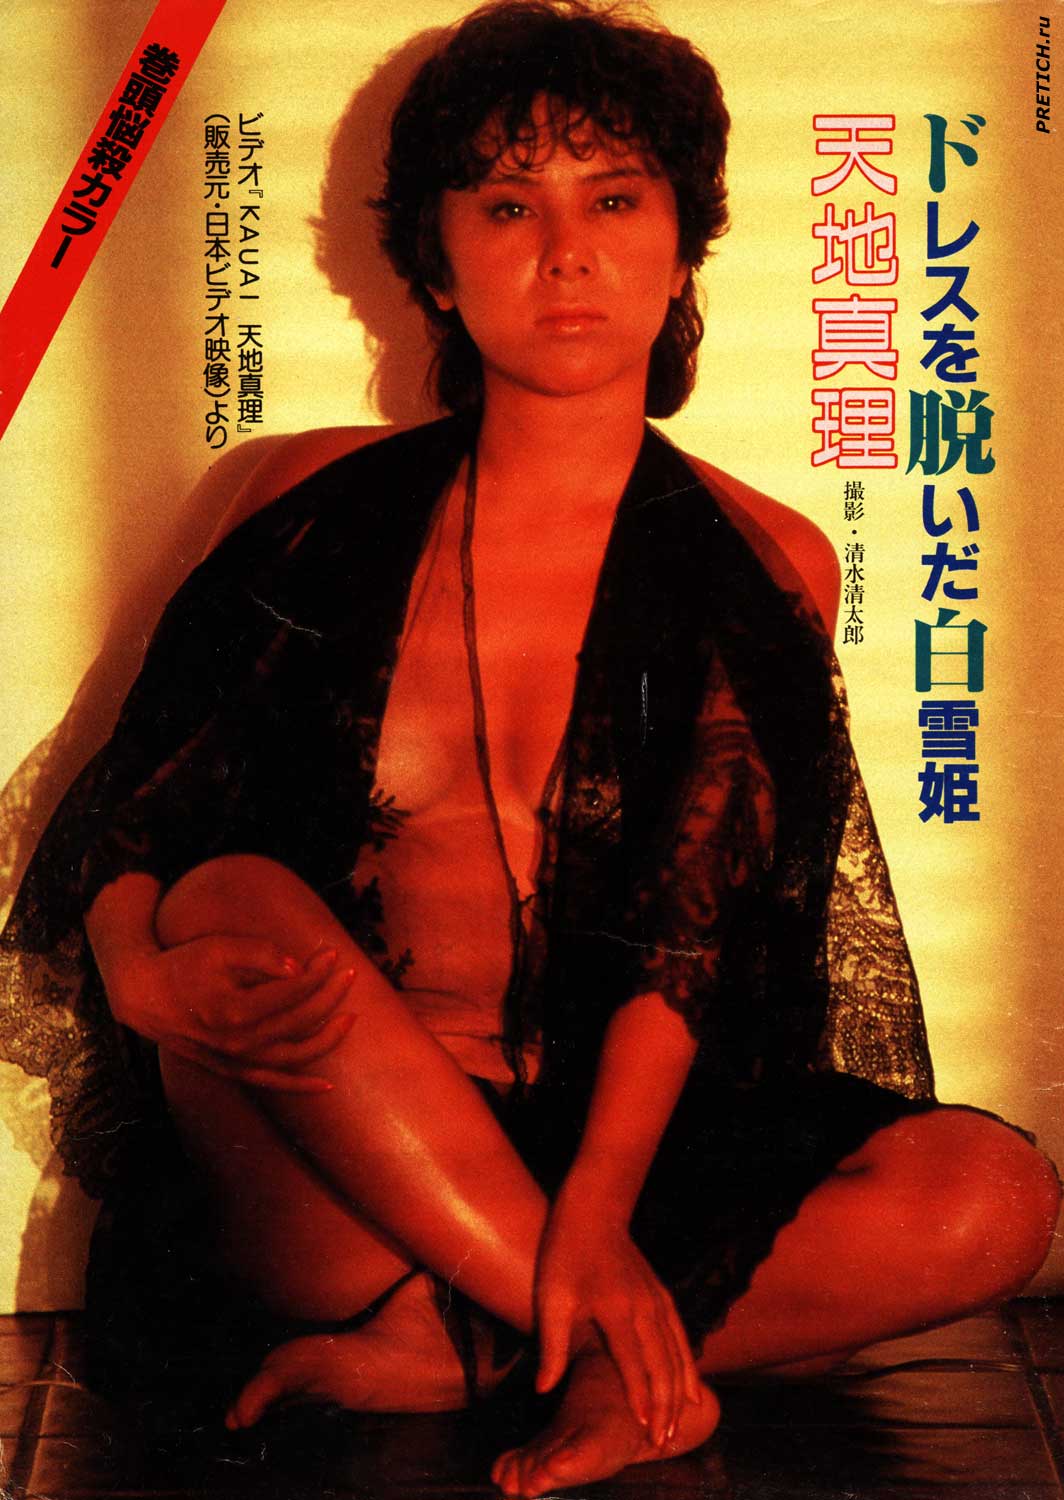 Японская гейша, фото из старого журнала